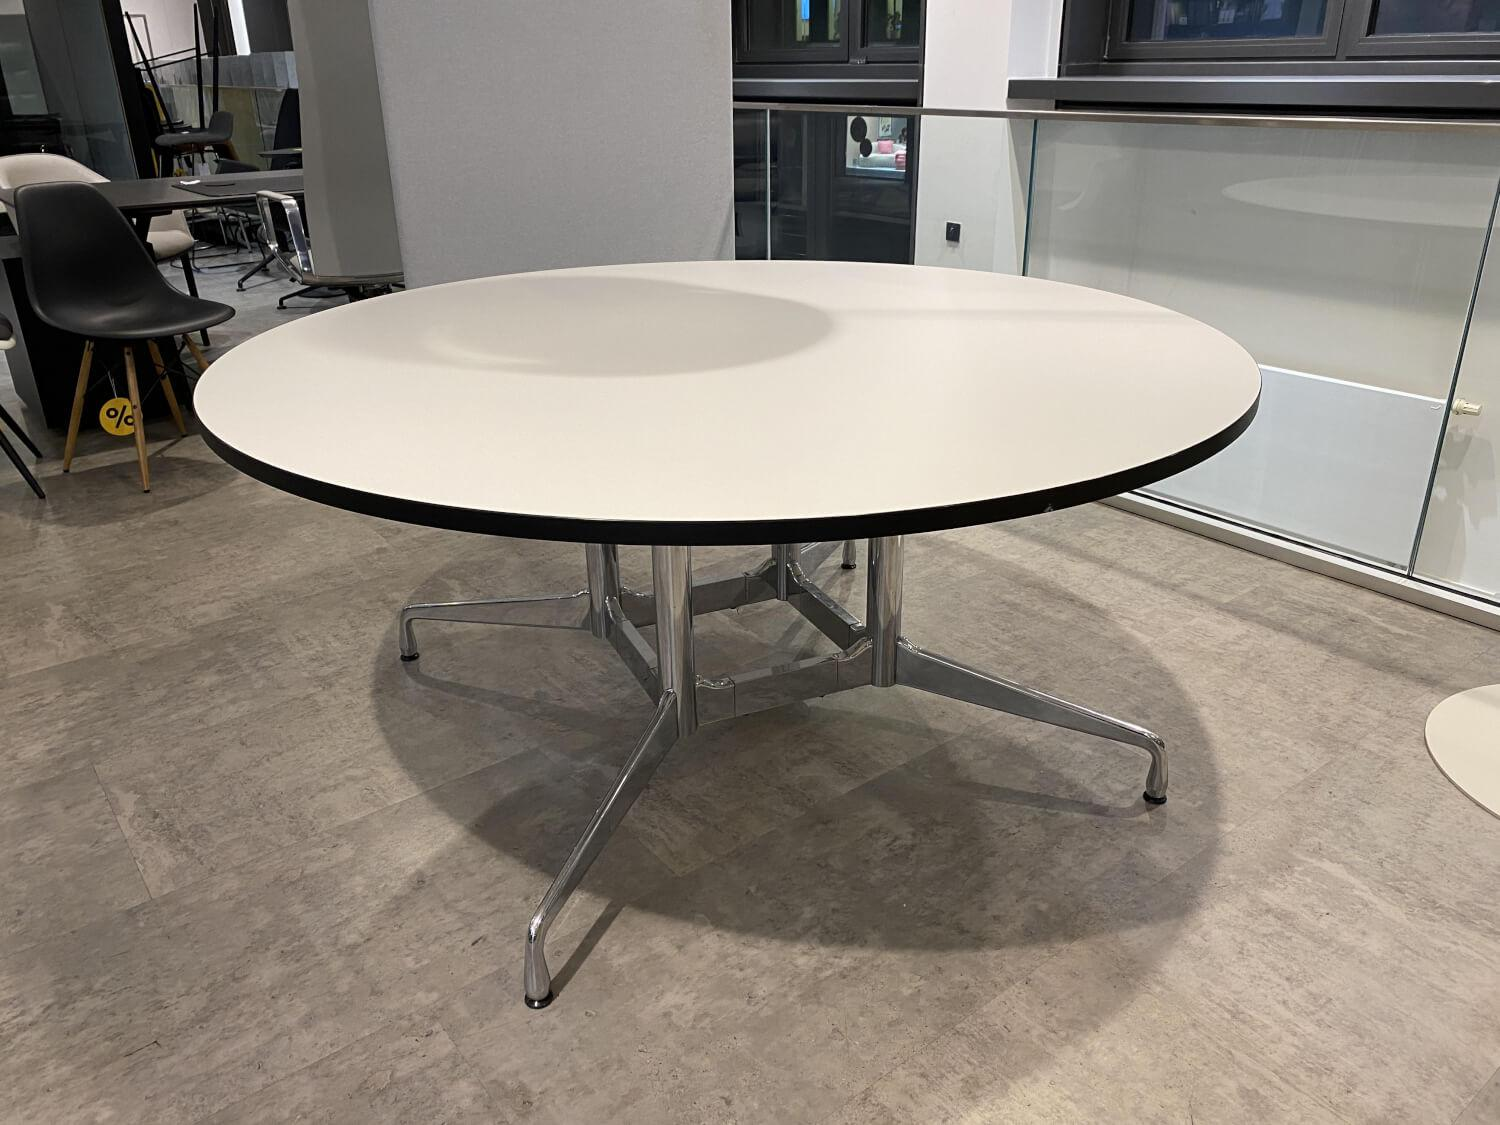 Konferenztisch Eames Segmented Table Platte Hartbelag Weiß Füße Chrom